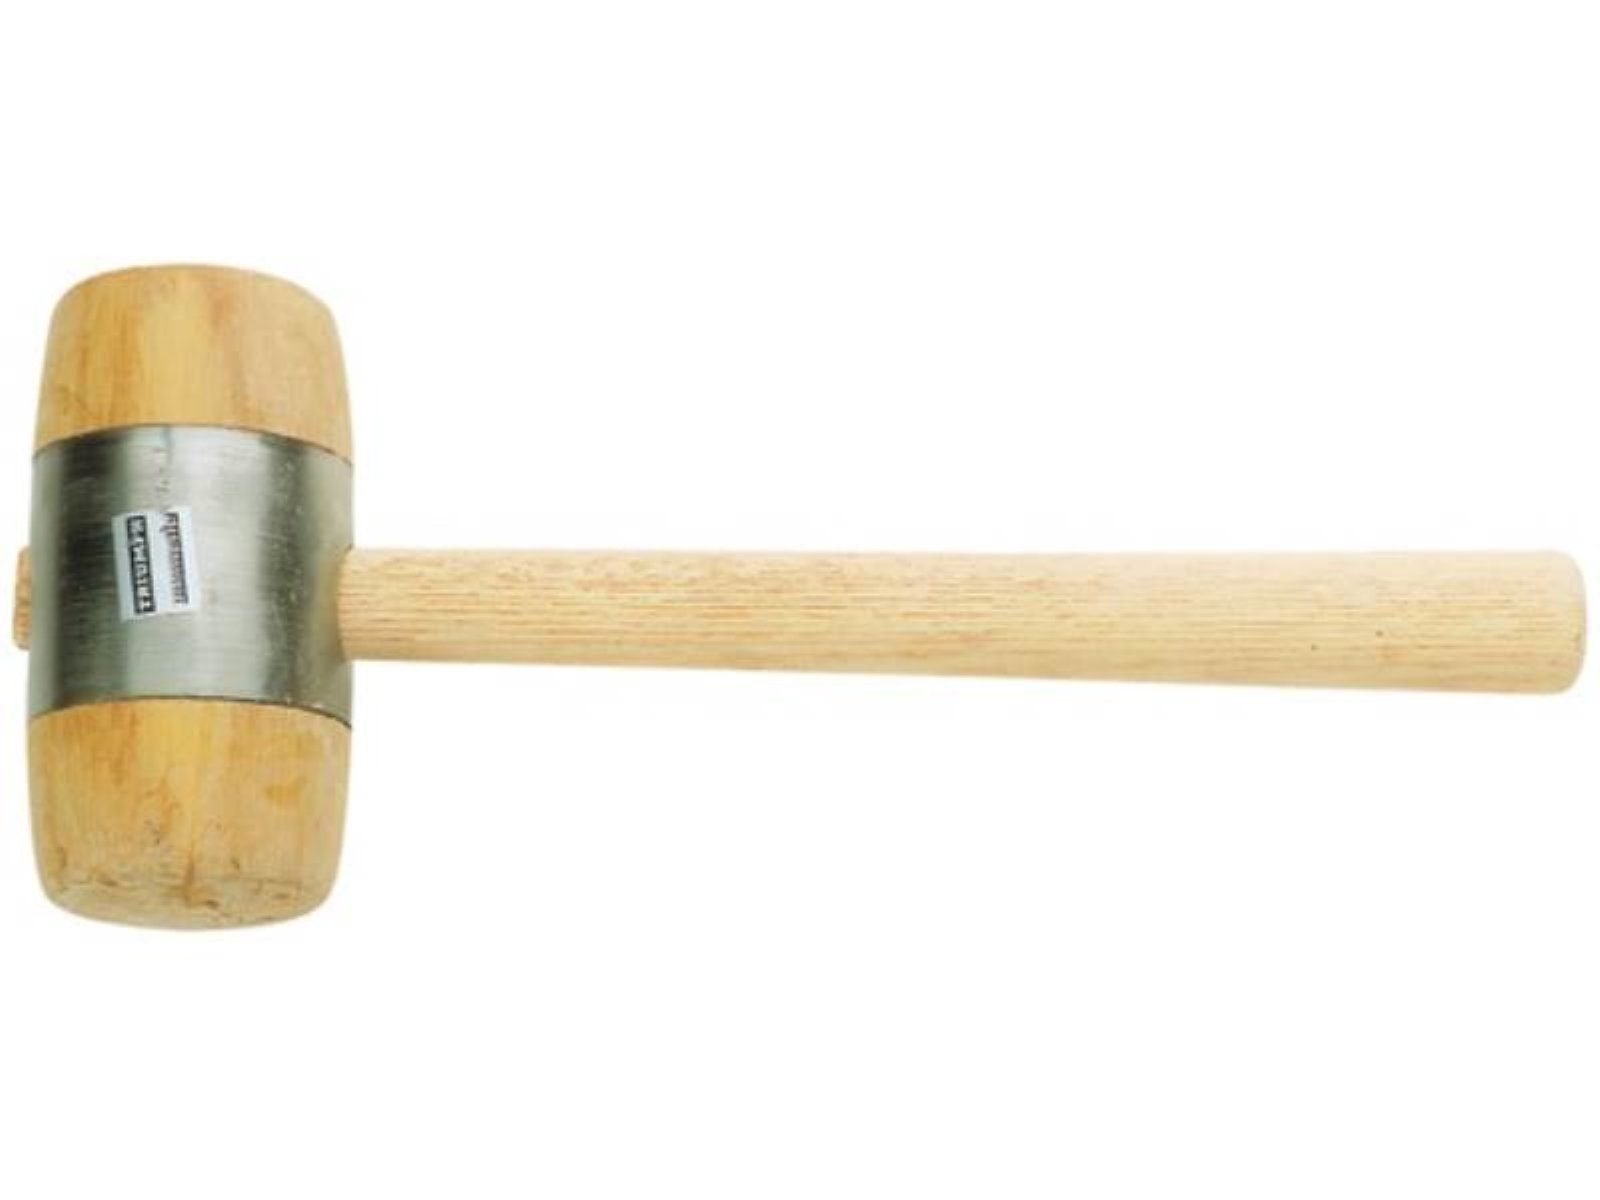 PROMAT Holzhammer Holzhammer Kopf-Ø 60mm Weißbuche aus Weißbuchenh 340g Hammerkörper